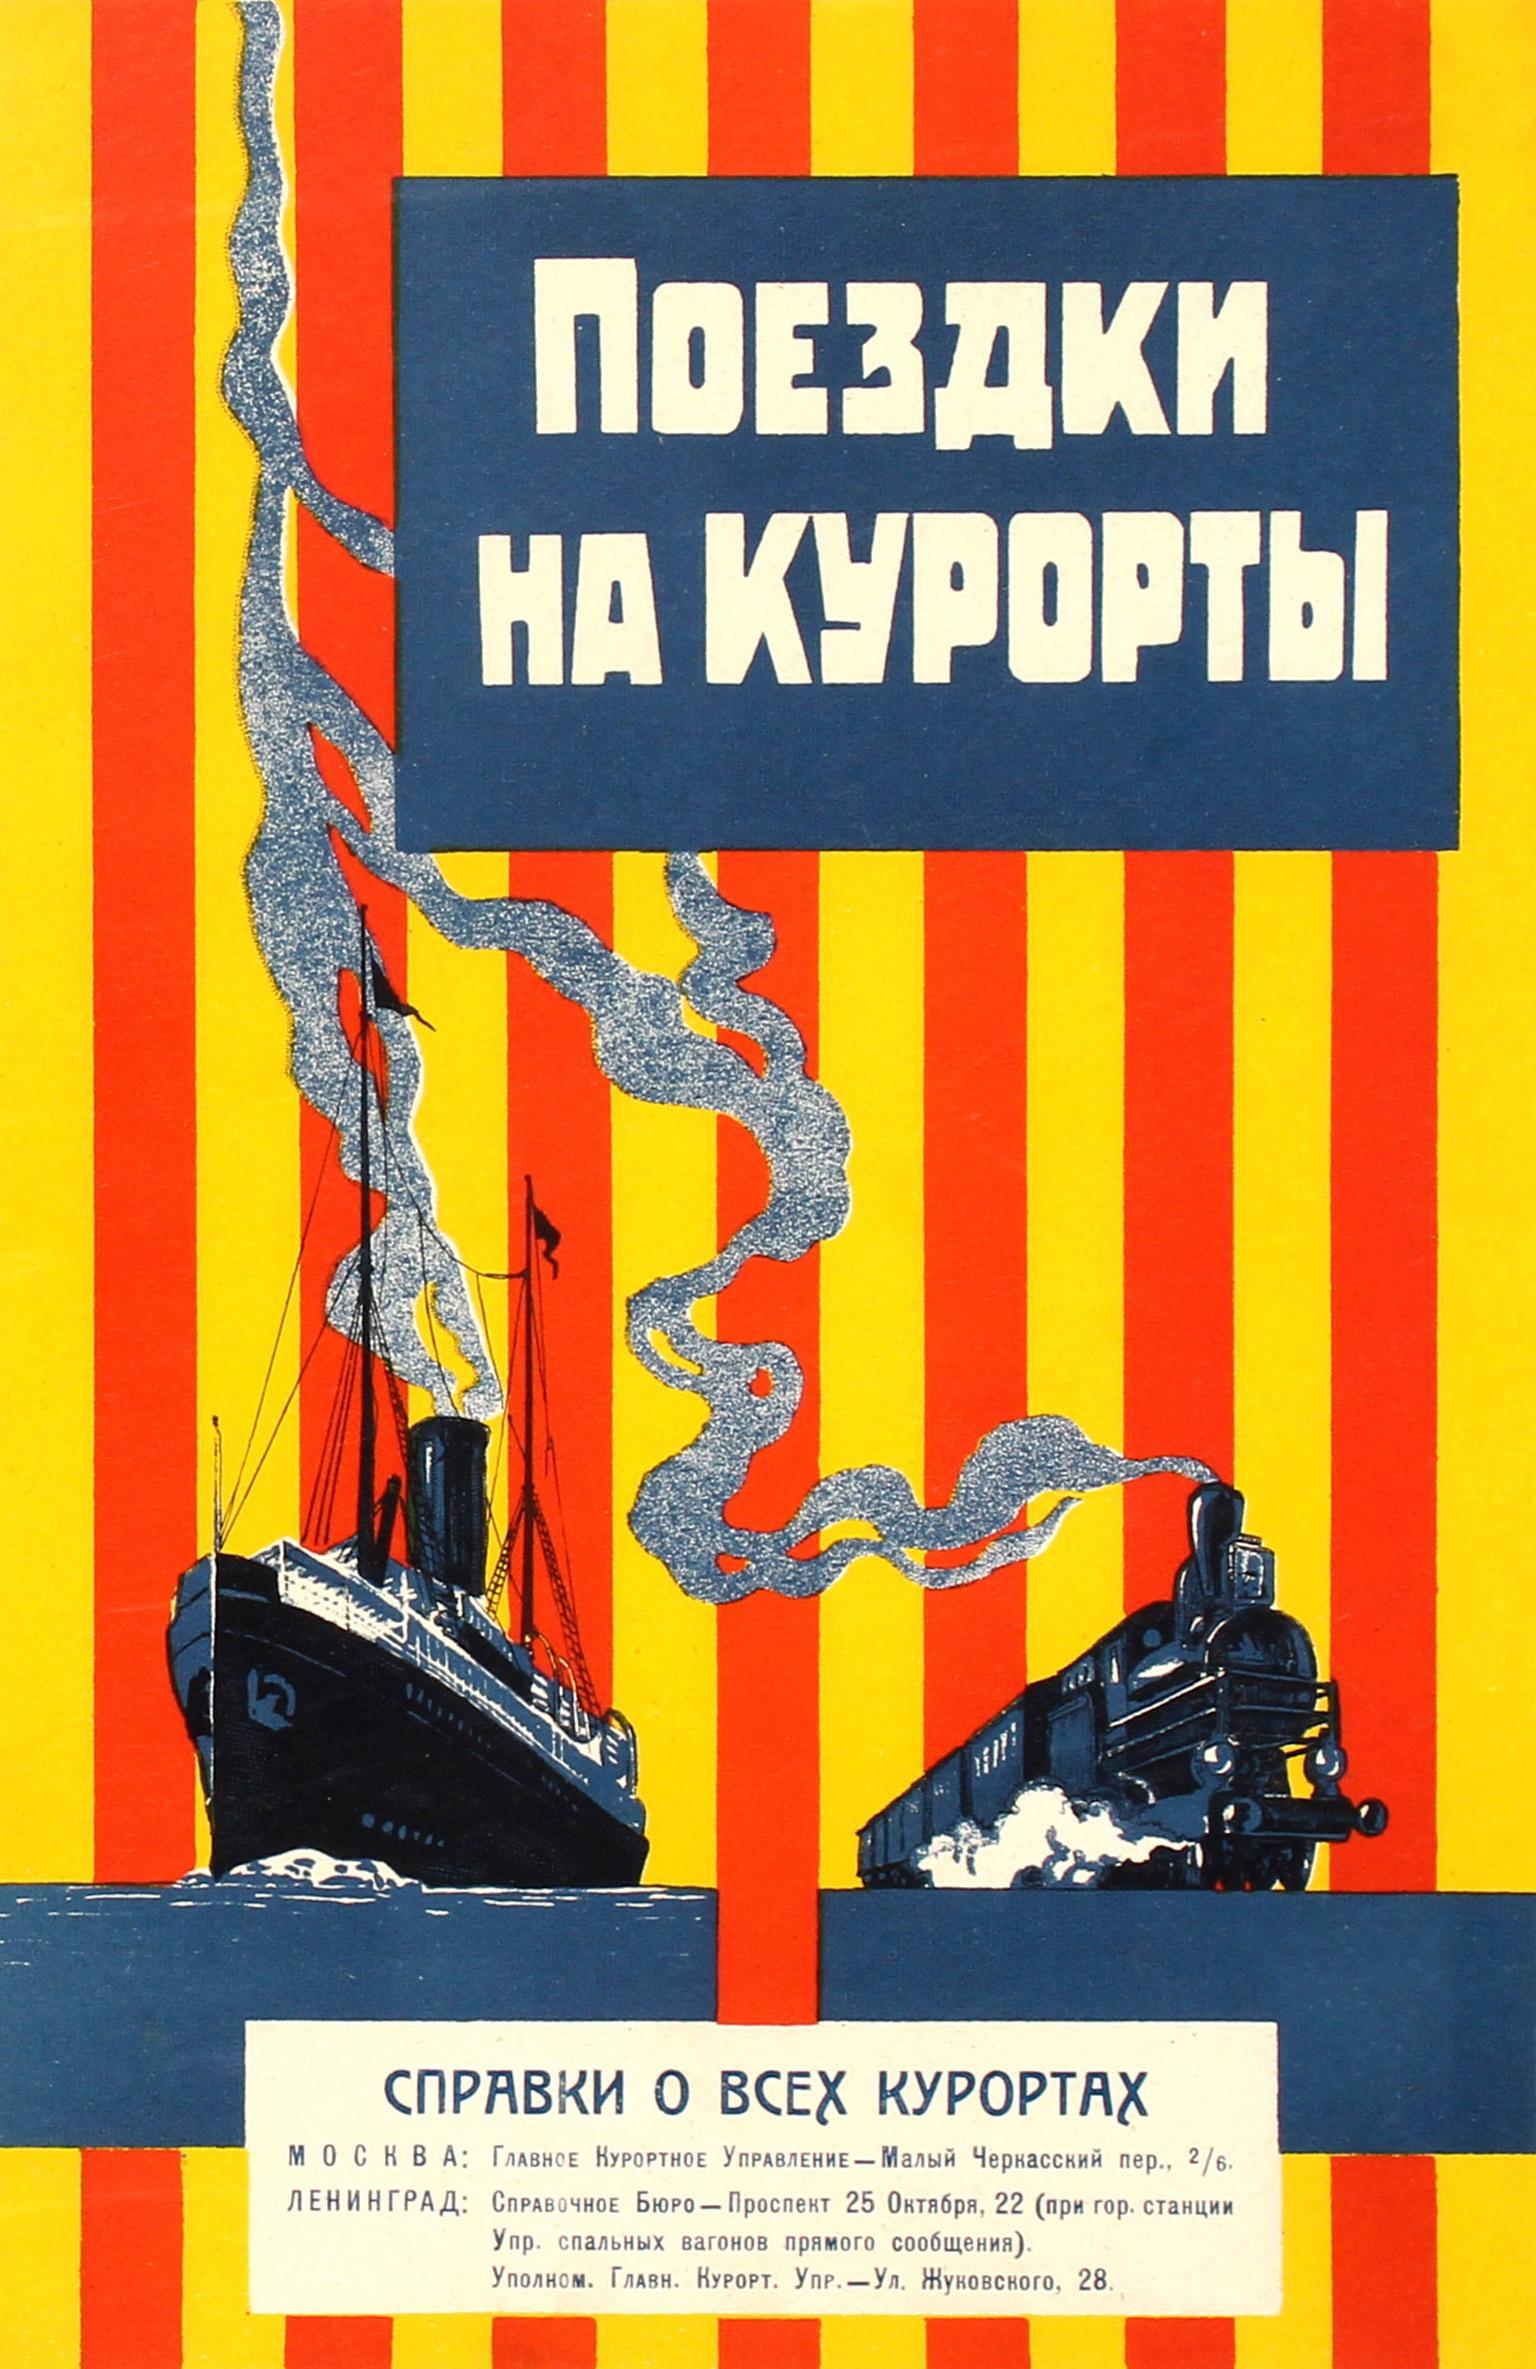 Affiche soviétique originale imprimée pendant la période de la Nouvelle politique économique (NEP). Elle présente un dessin coloré avec un navire naviguant en mer et un train à vapeur se dirigeant vers le spectateur, la vapeur des deux cheminées se